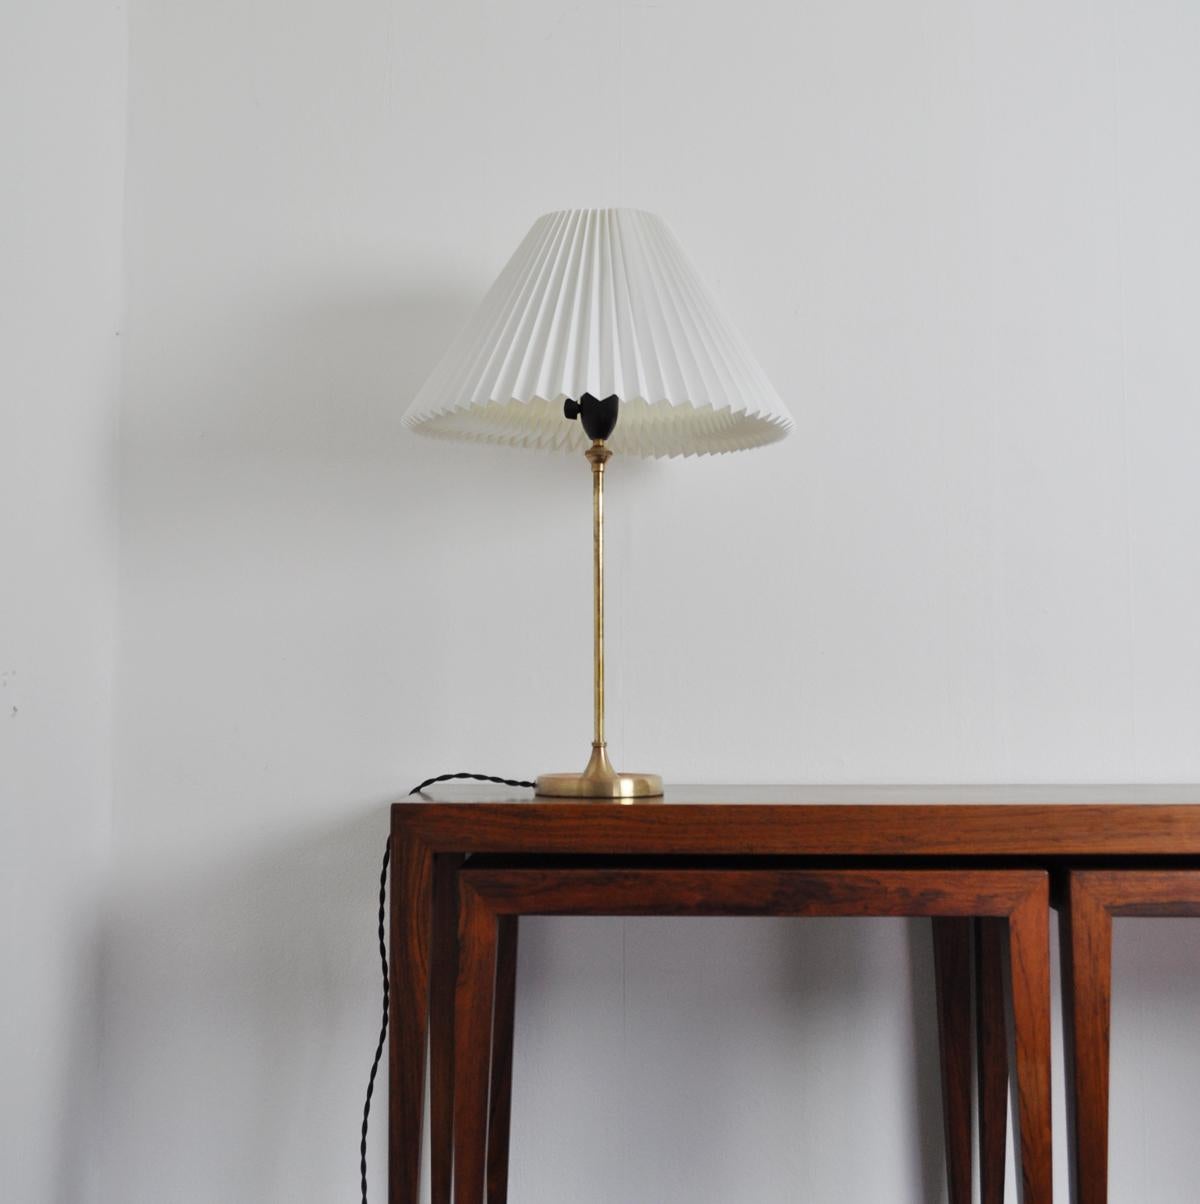 Scandinavian Modern Brass Table Lamp Designed by Esben Klint for Le Klint, 1948